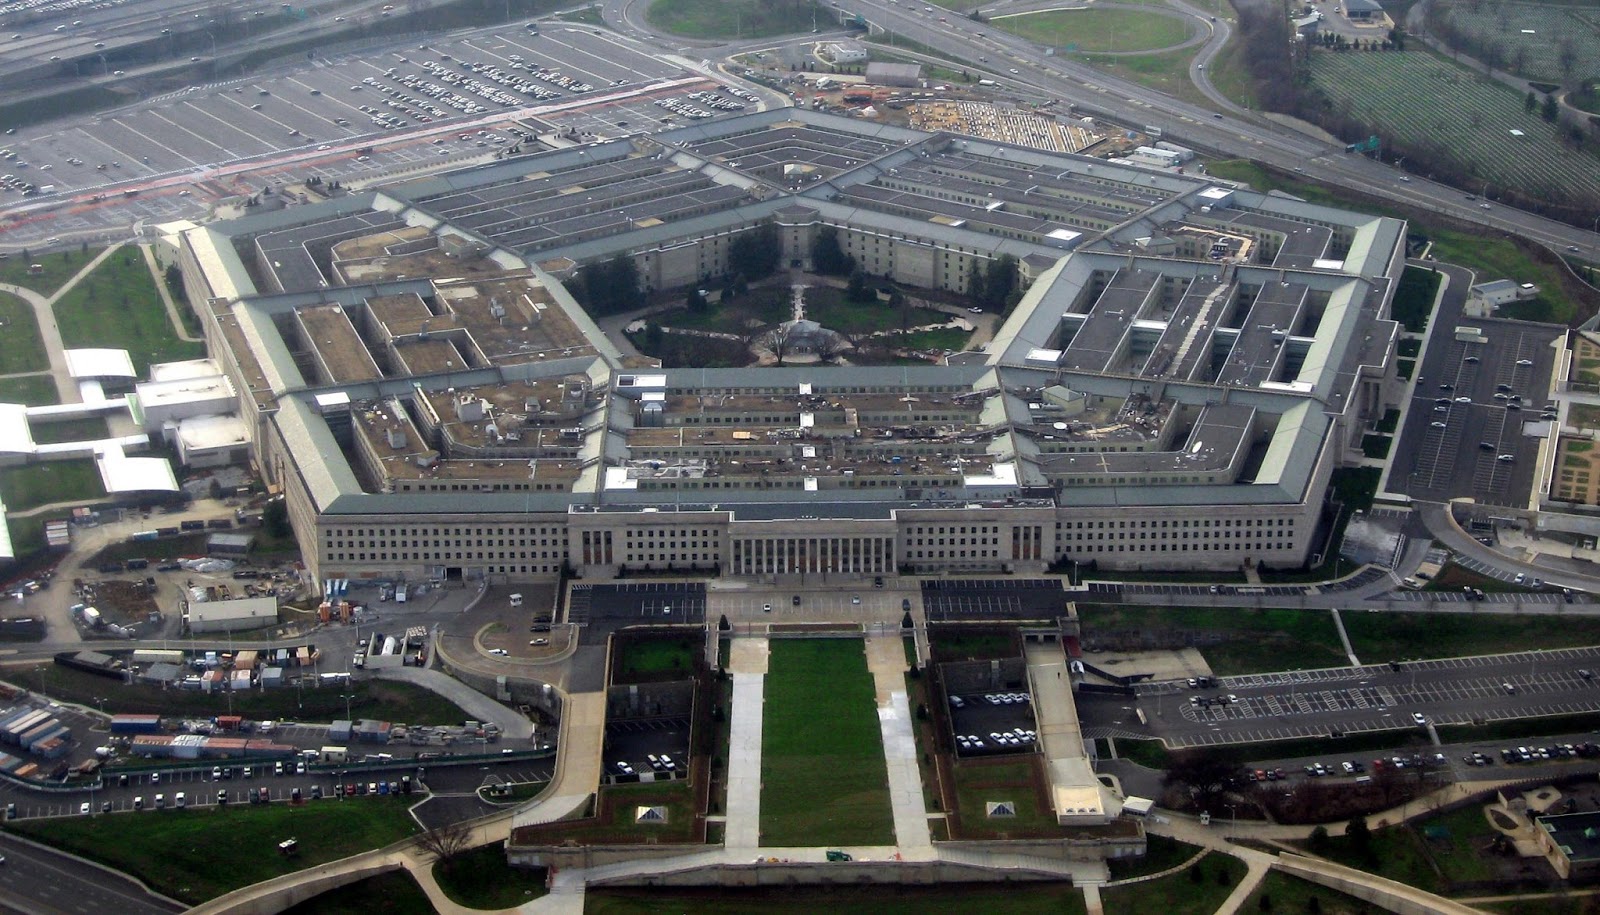 EEUU hará gran desfile militar el 11 de noviembre, según el Pentágono